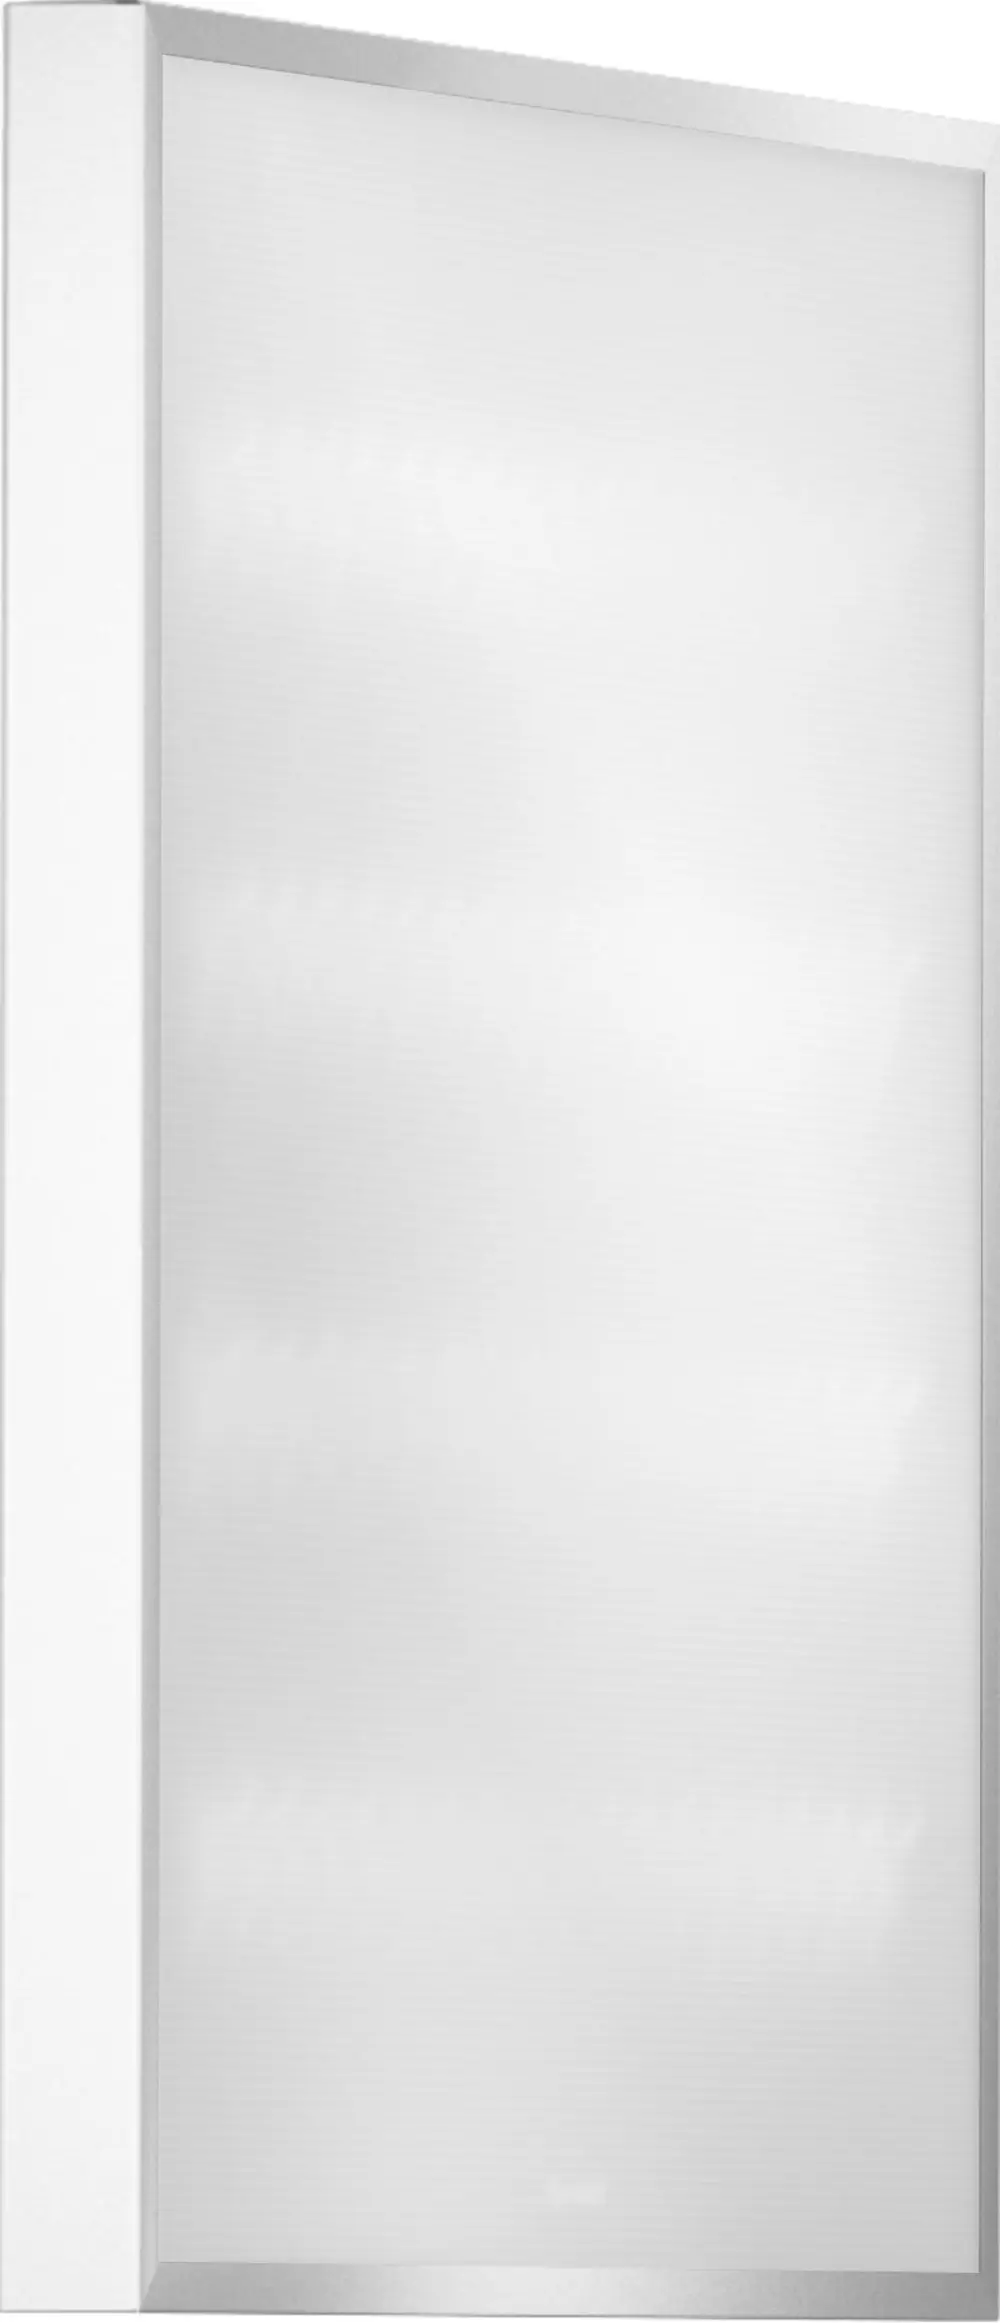 Автономный Офис Standart 595×595×40 40Вт 5000К Матовое закаленное стекло БАП Res1